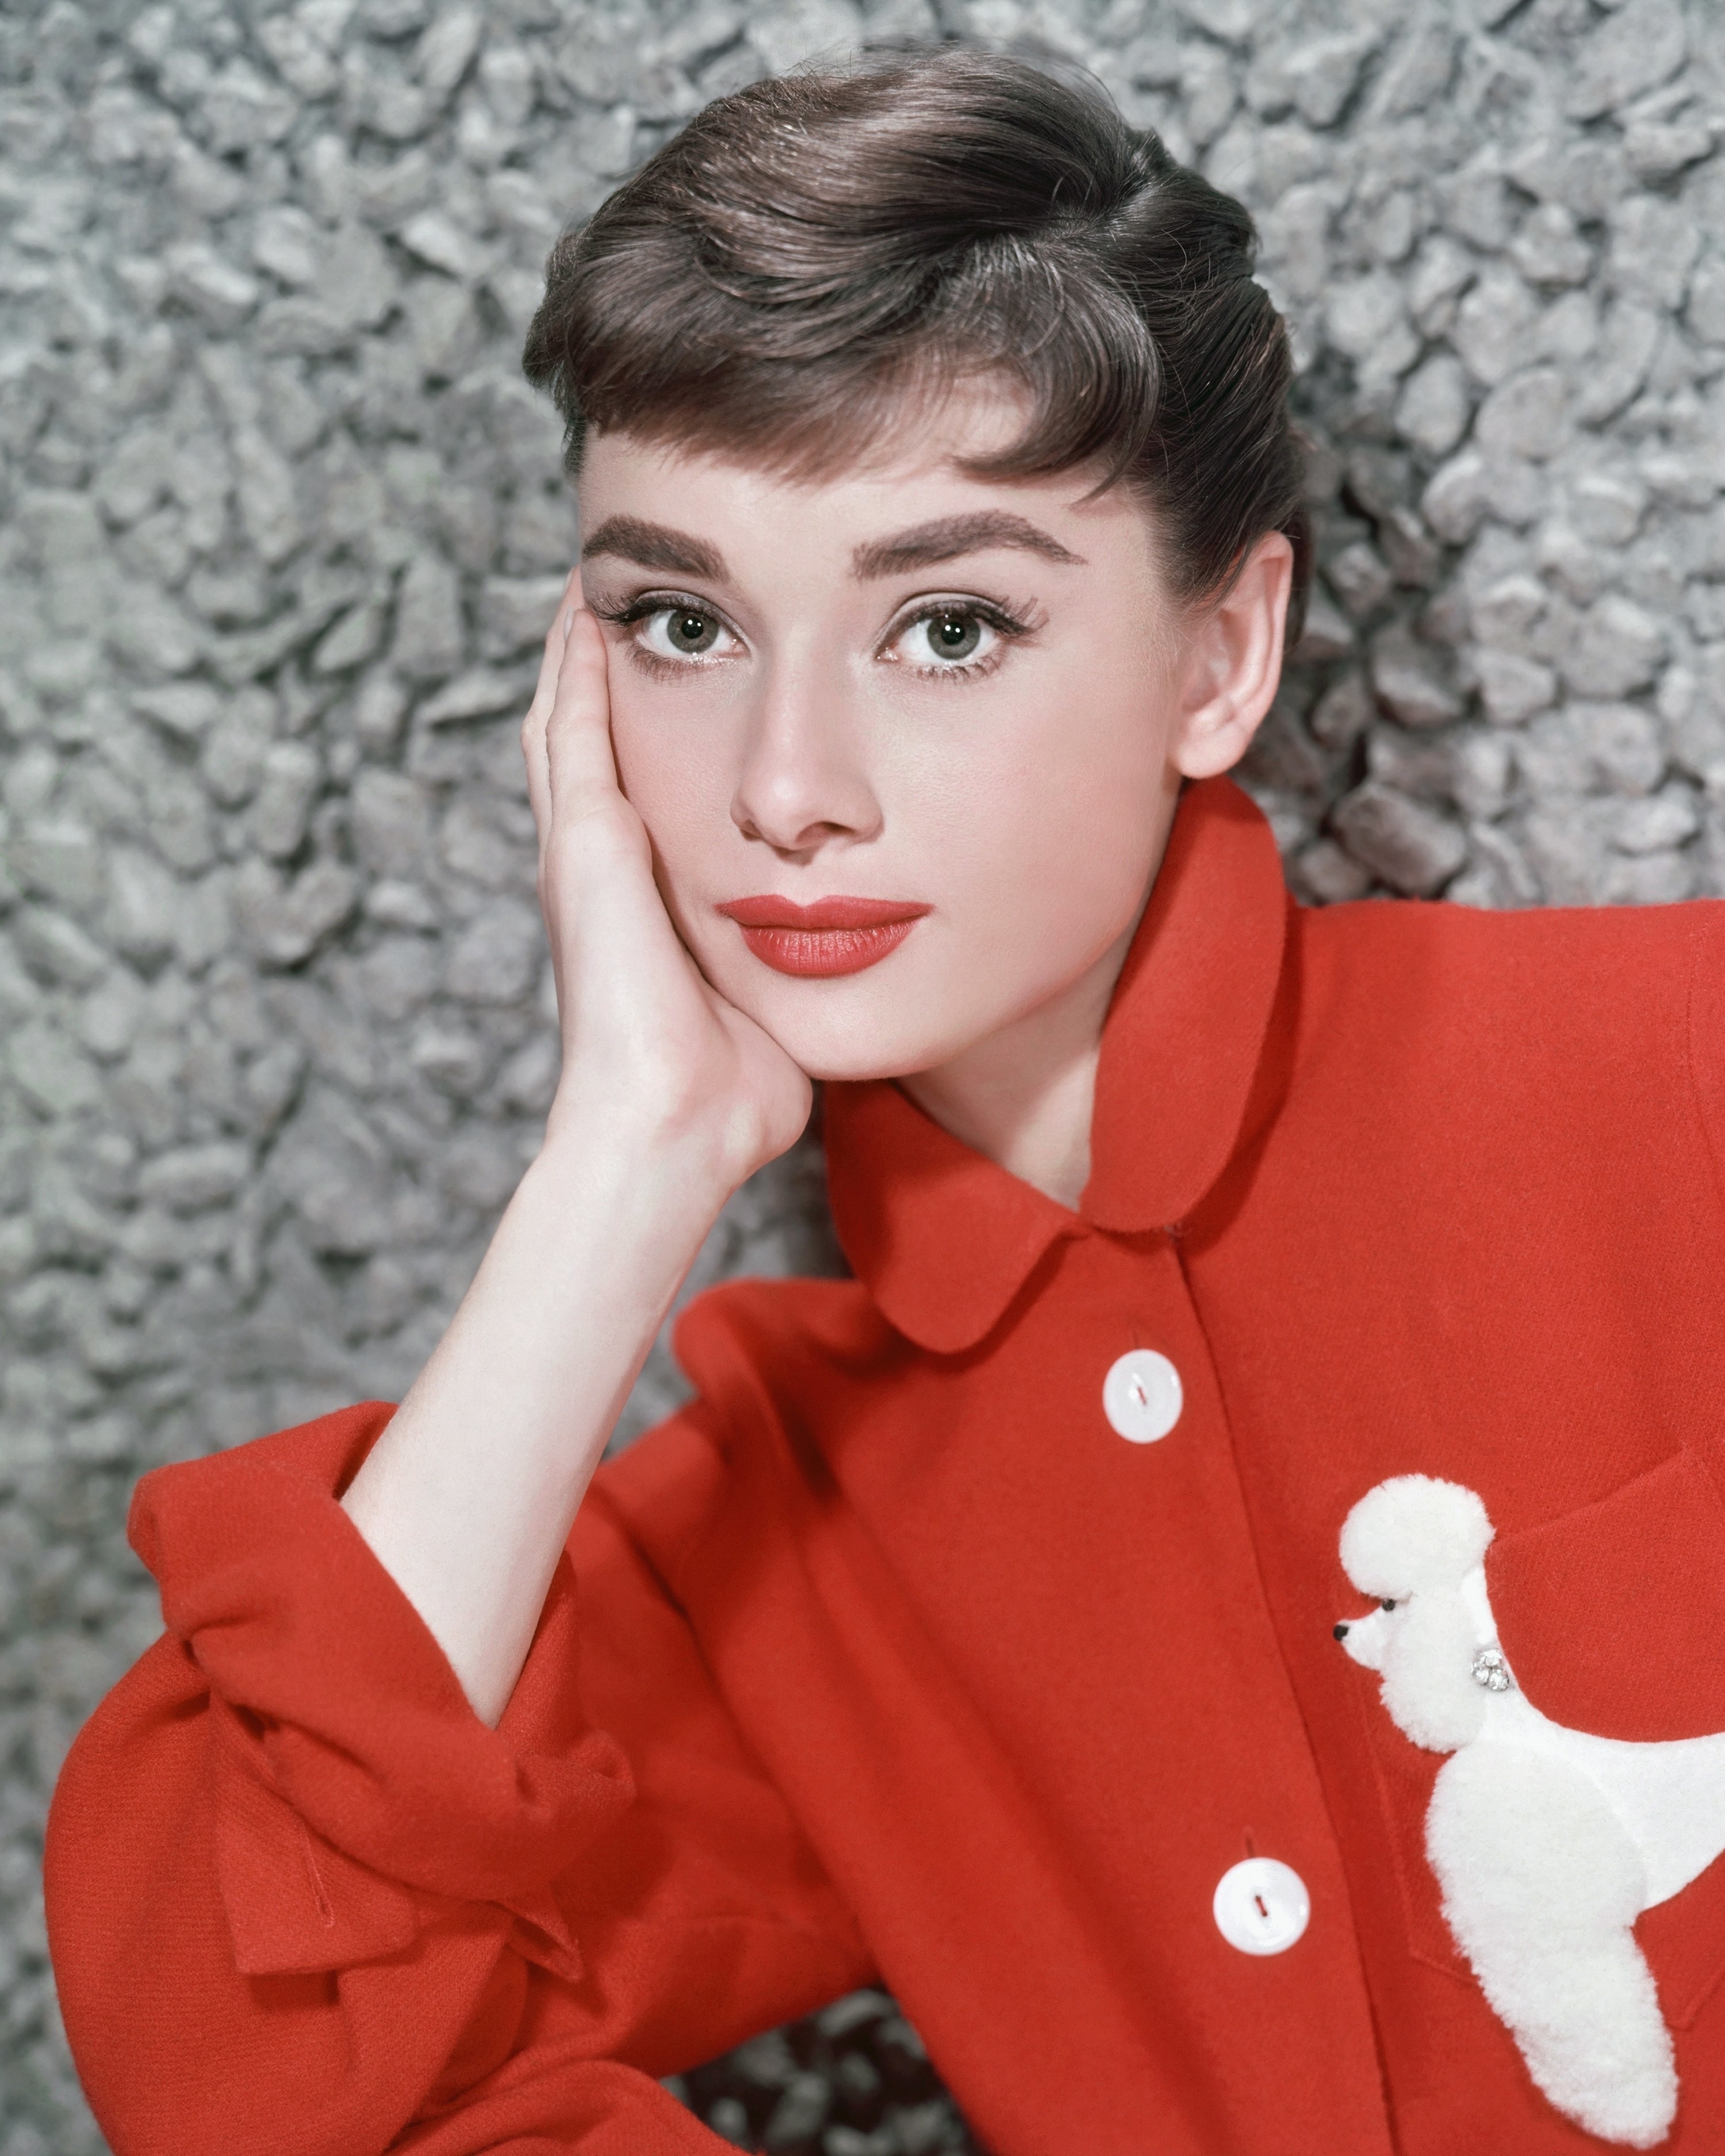 Audrey Hepburn posing for a publicity still